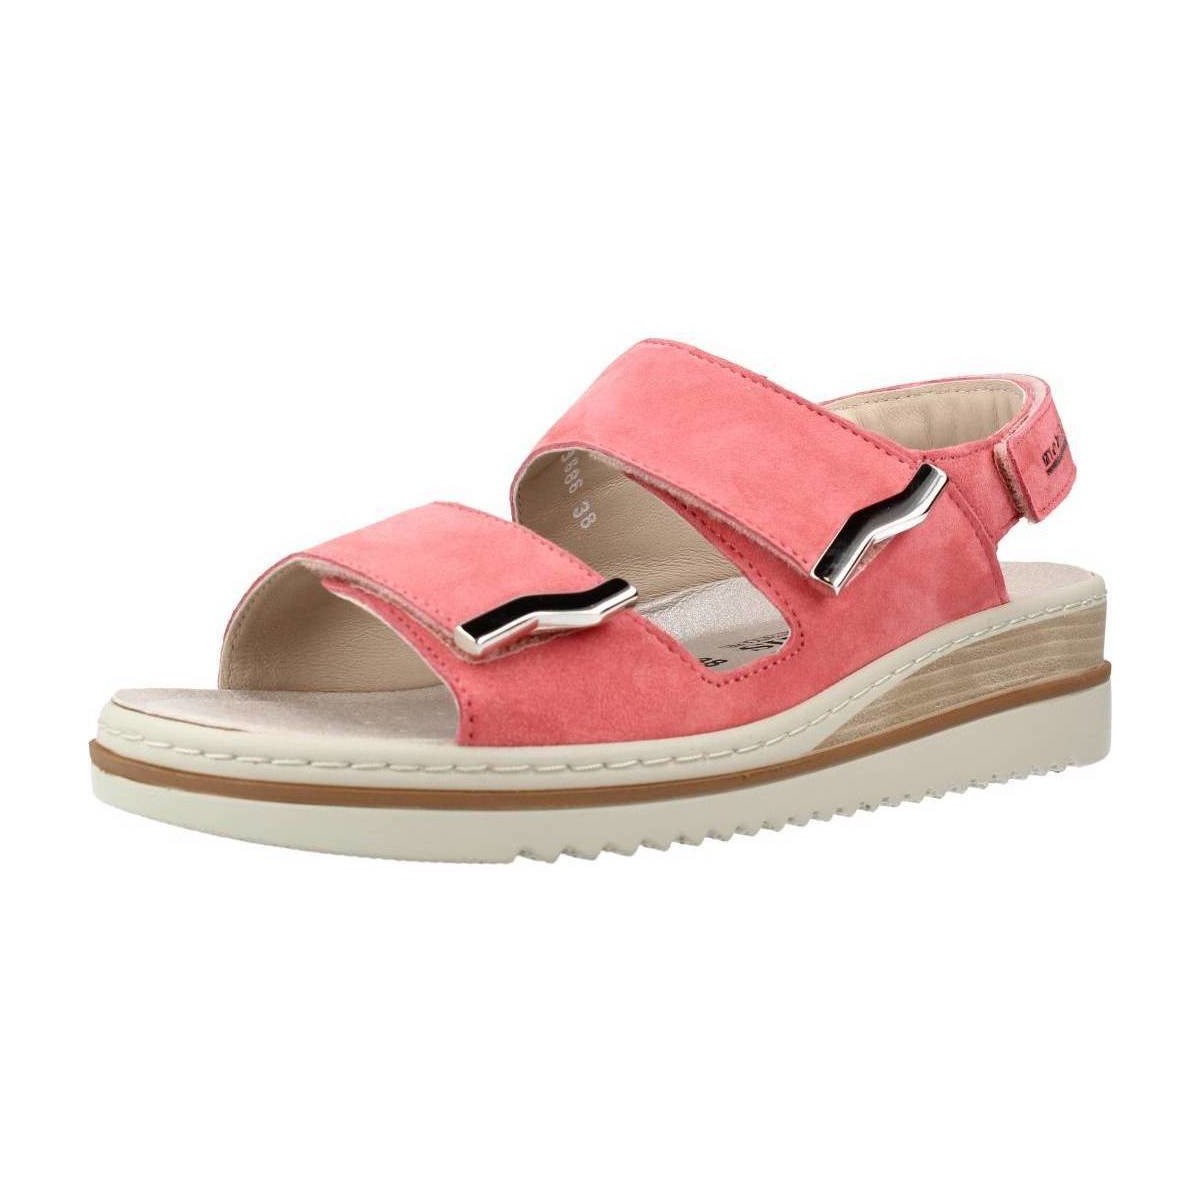 Schoenen Dames Sandalen / Open schoenen Mobils DARCIE VELCALF PREMIUM Roze